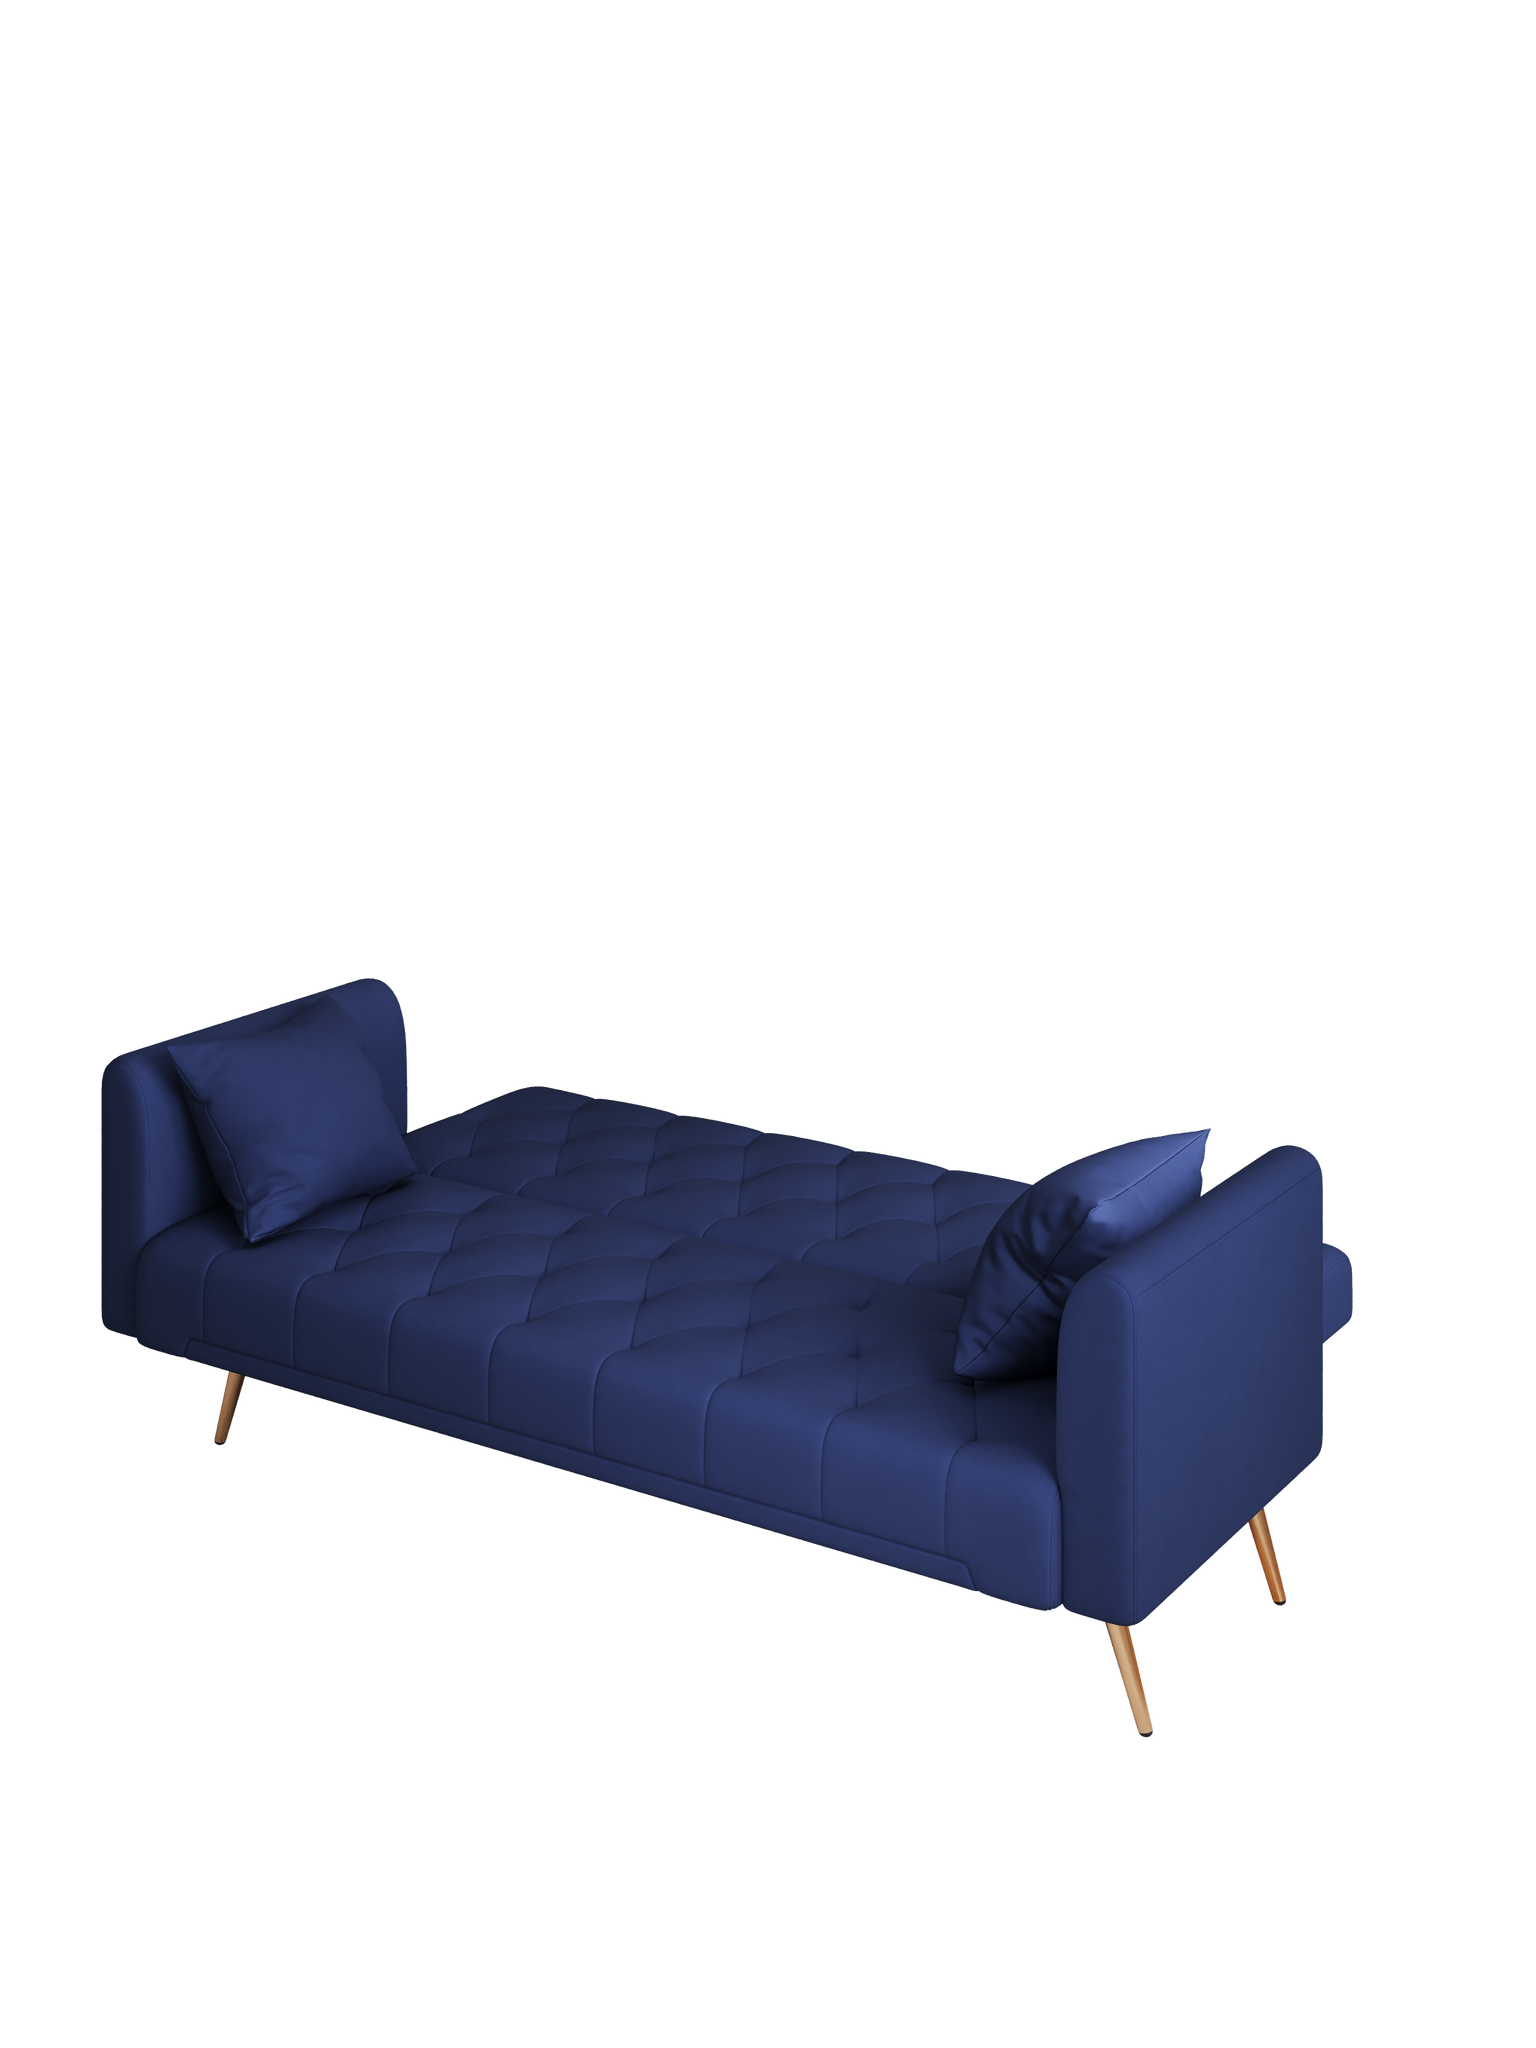 71" Convertible Double Folding Living Room Sofa Bed blue-velvet